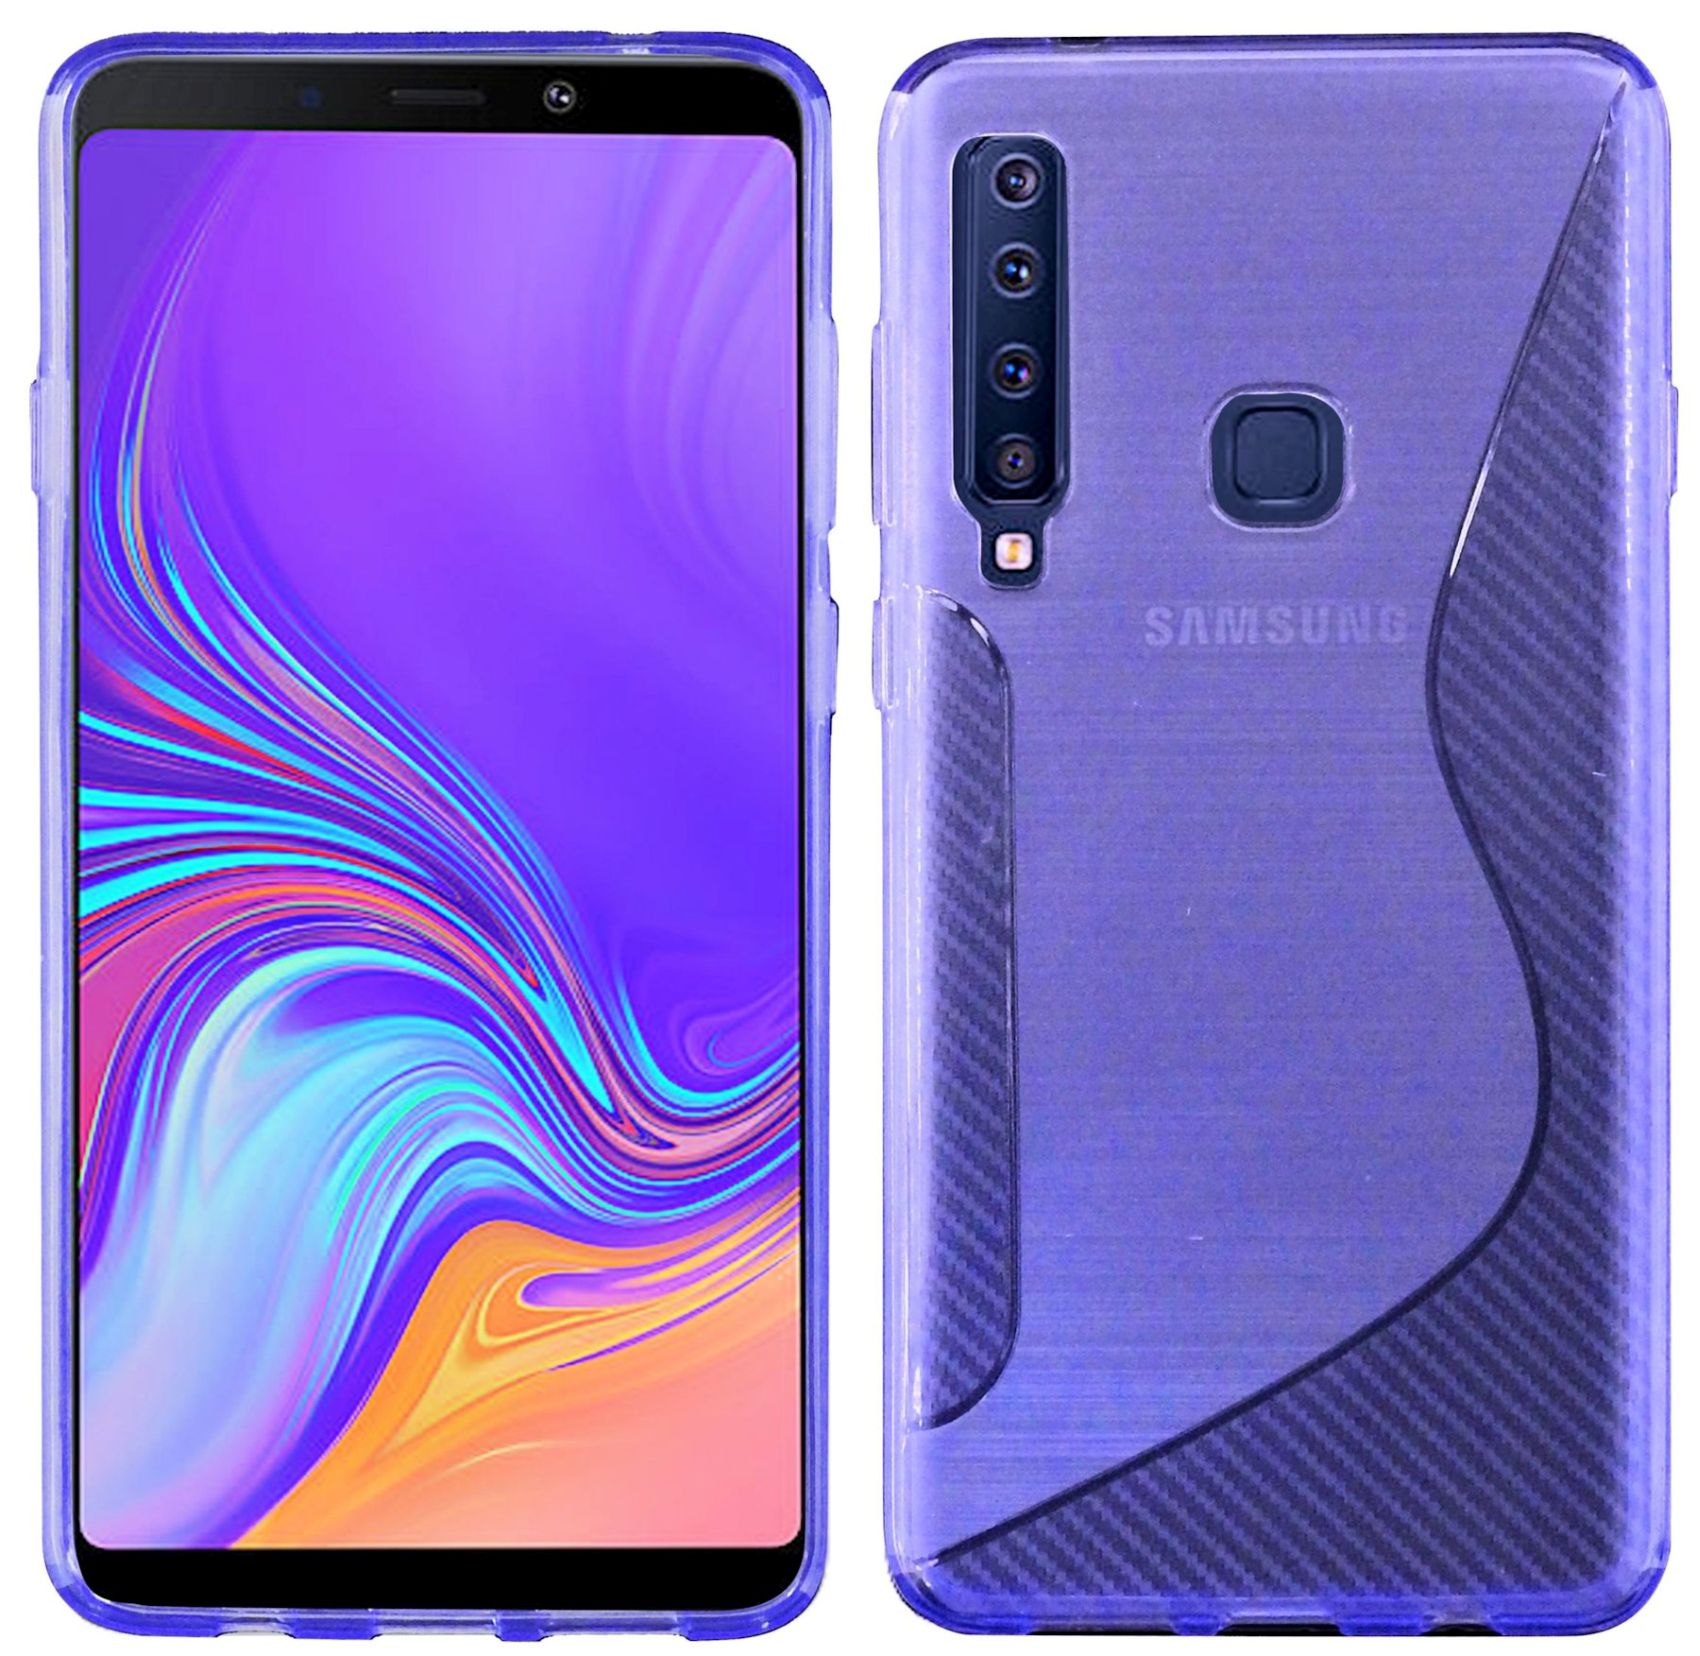 S-Line Cover, 2018, Bumper, Violett COFI Galaxy A9 Samsung,